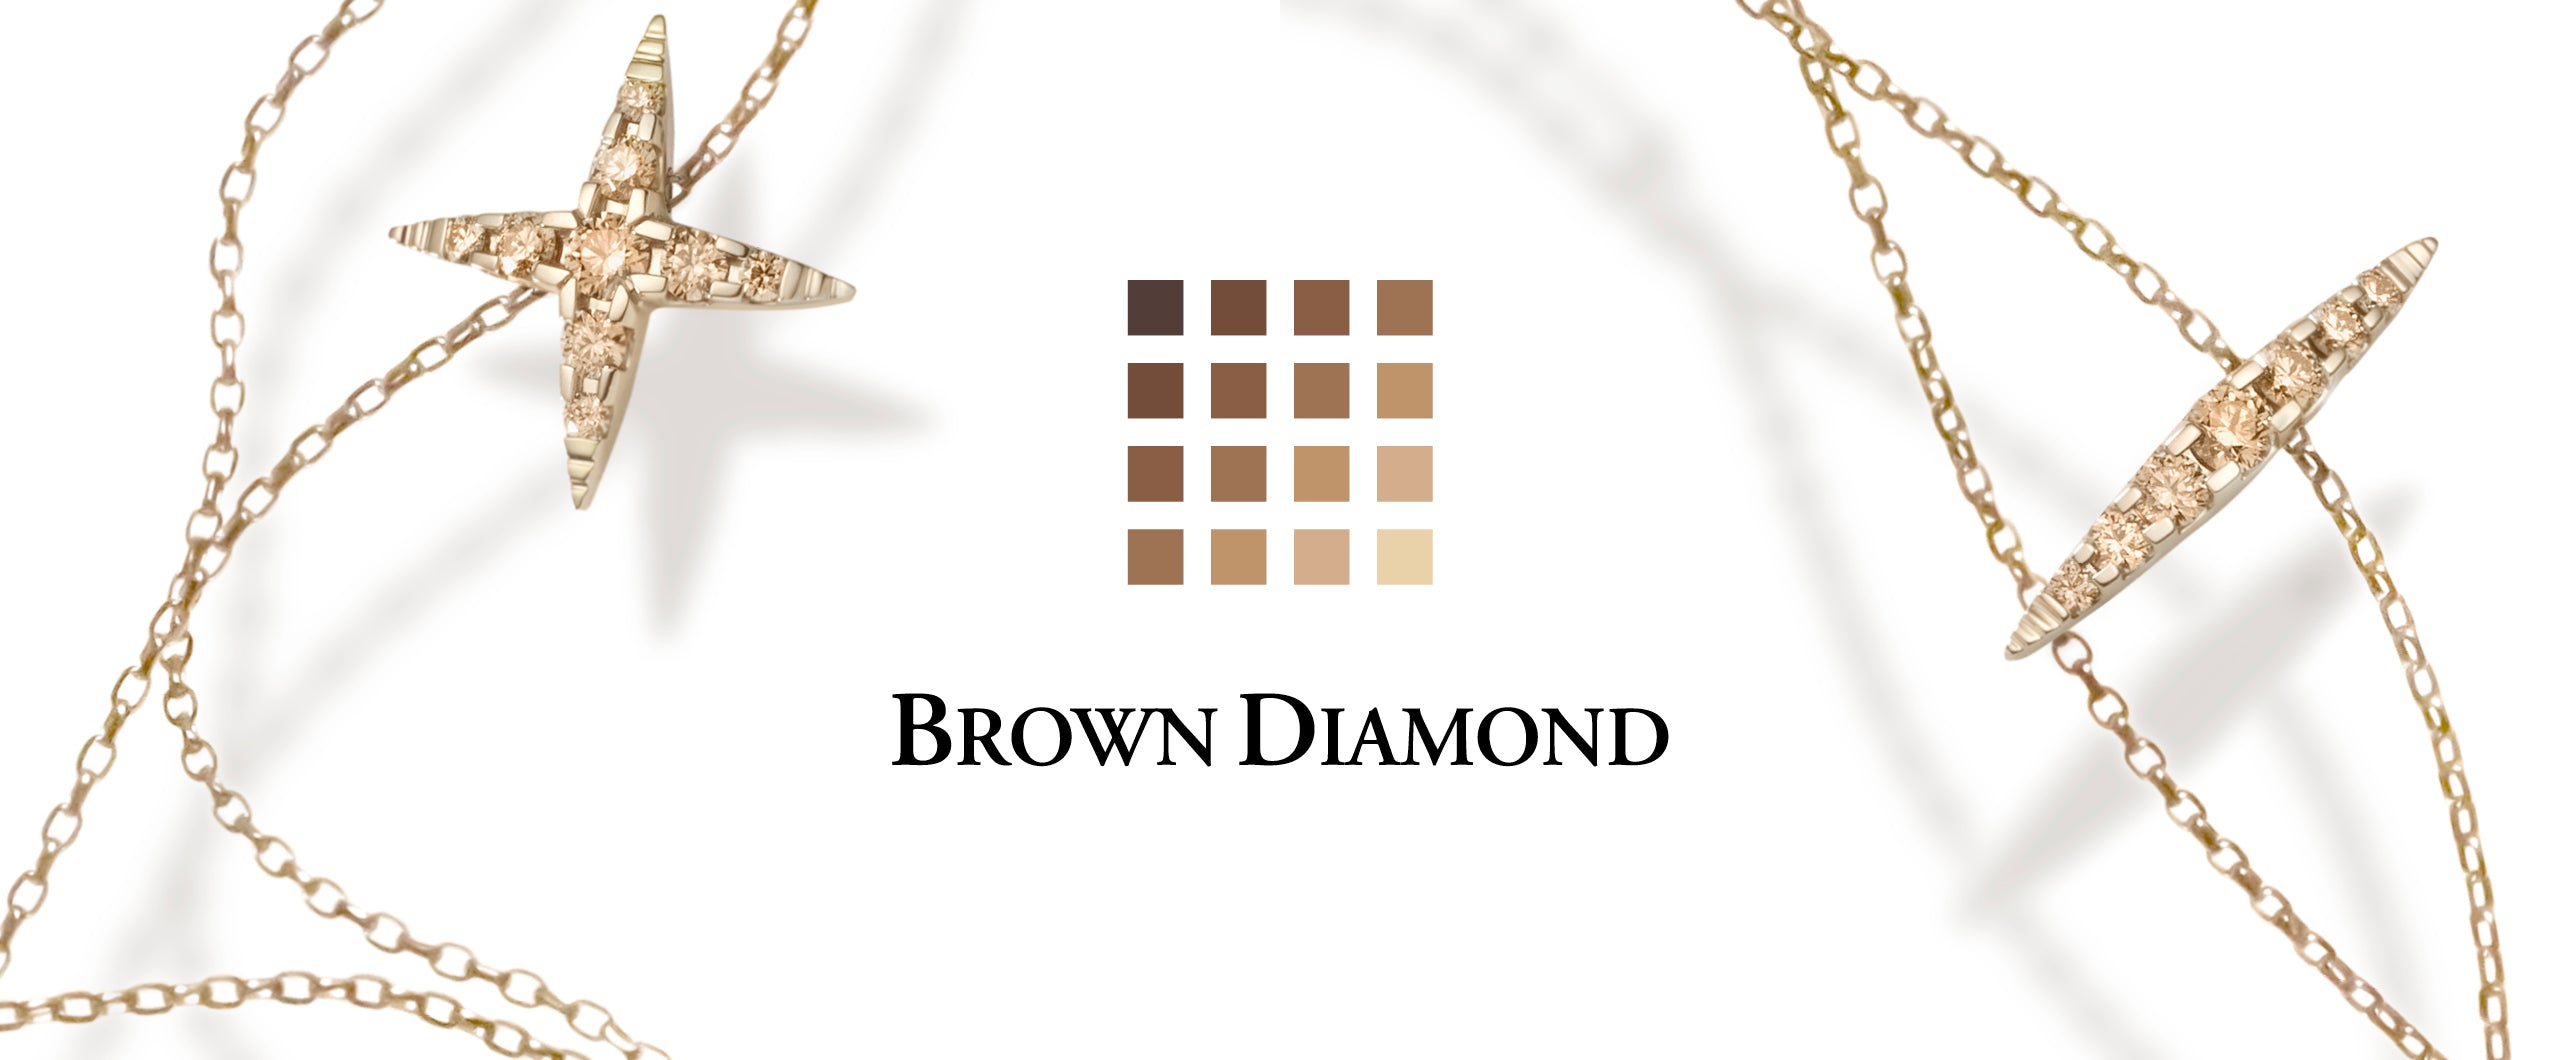 【ジュエリー】KASHIKEY BROWN DIAMOND / カシケイ ブラウンダイヤモンド